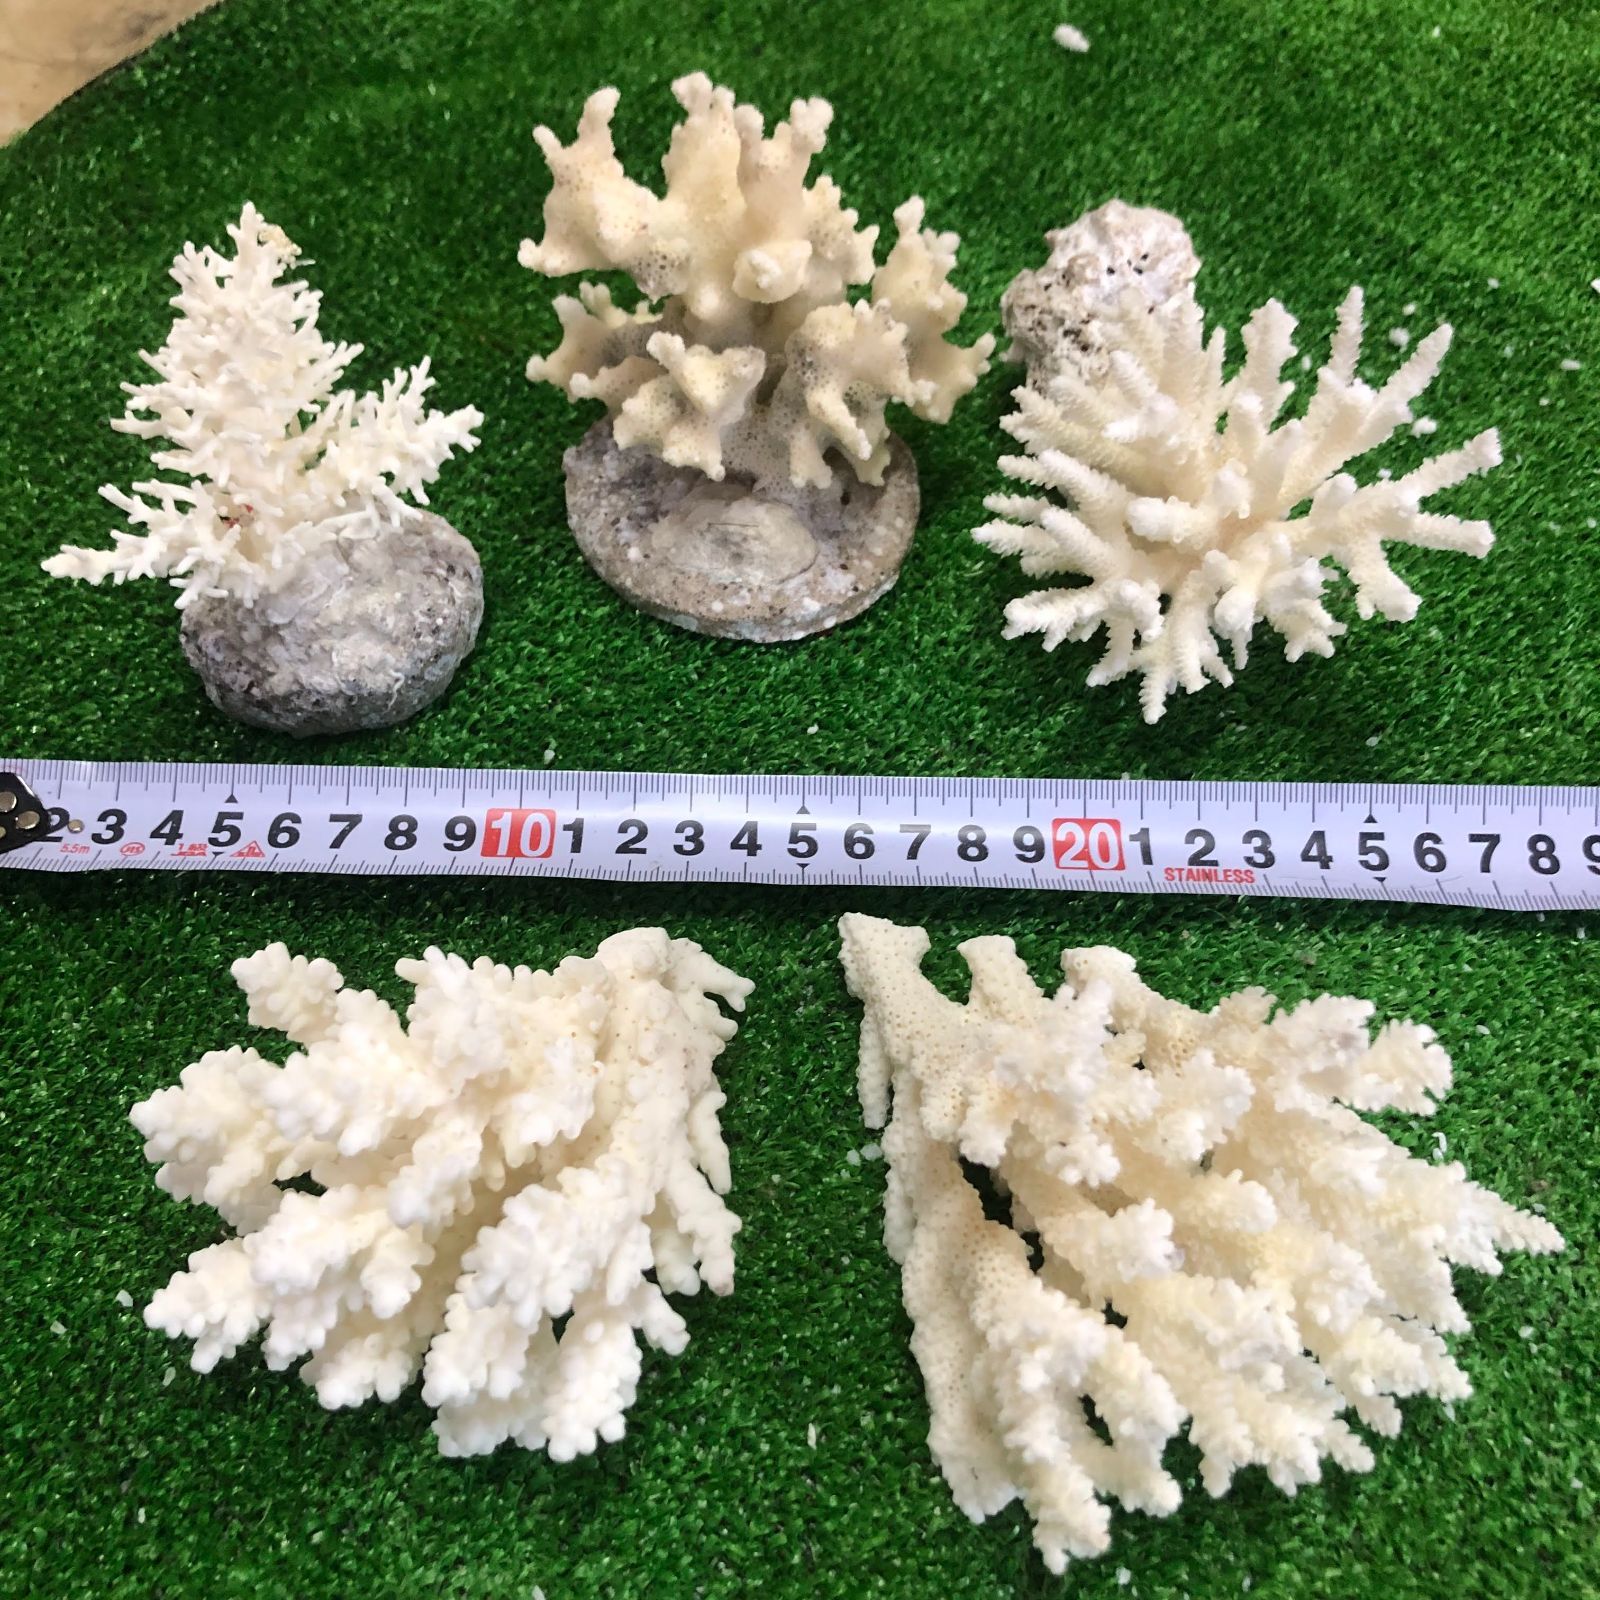 珊瑚 ミニ 置物 「布袋尊」 Z-7と本極太珊瑚置物 25cm - インテリア雑貨